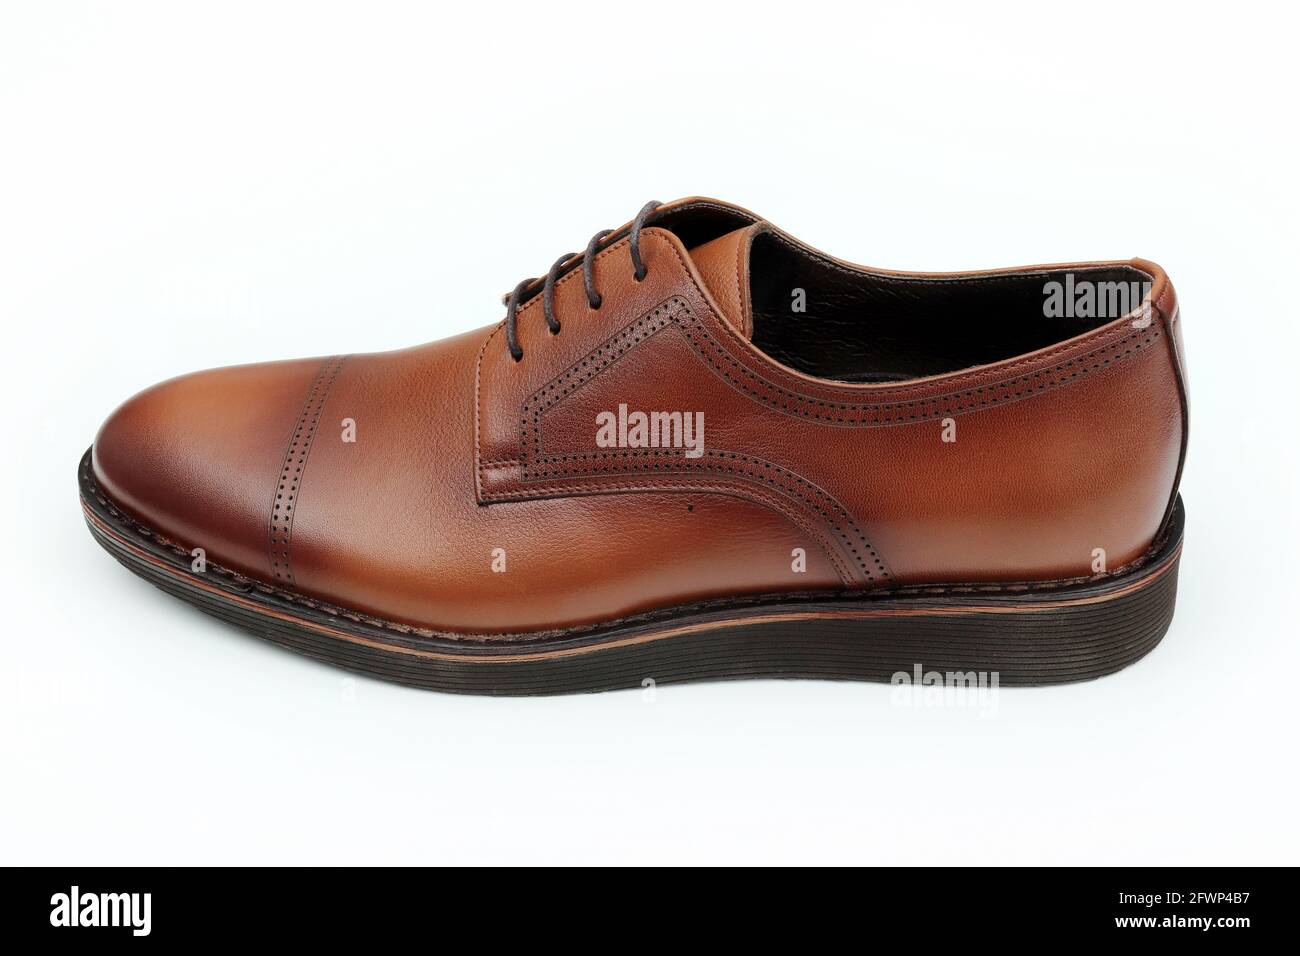 Chaussures classiques en cuir marron pour homme Photo Stock - Alamy